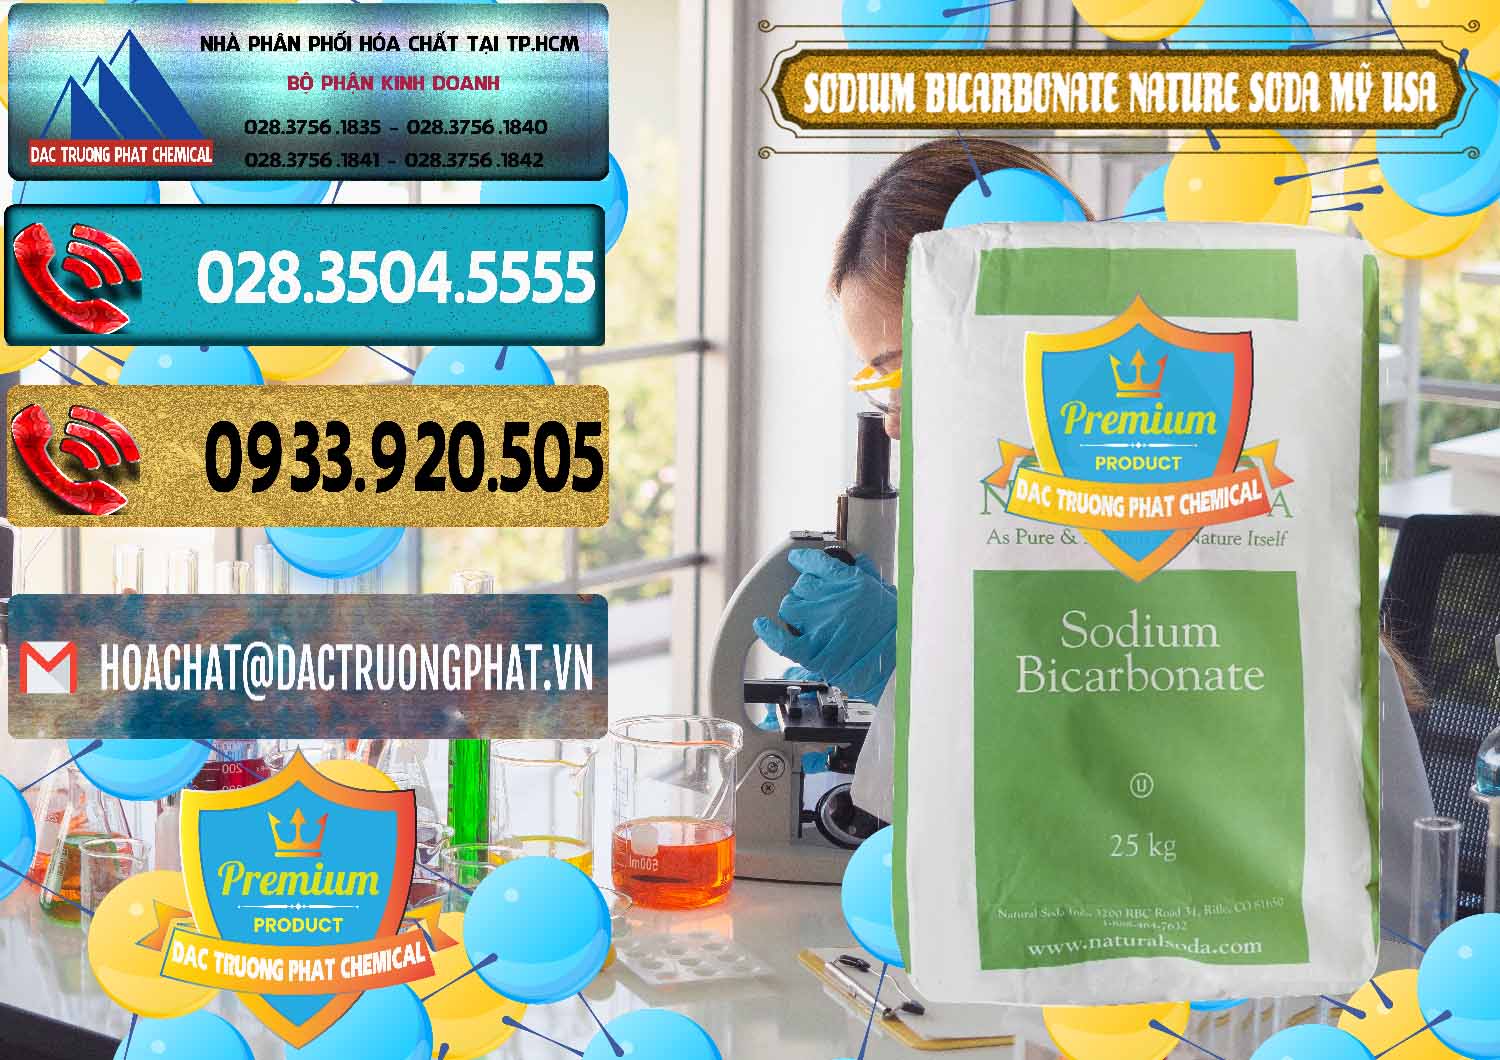 Đơn vị chuyên bán & cung ứng Sodium Bicarbonate – Bicar NaHCO3 Food Grade Nature Soda Mỹ USA - 0256 - Công ty chuyên bán và phân phối hóa chất tại TP.HCM - hoachatdetnhuom.com